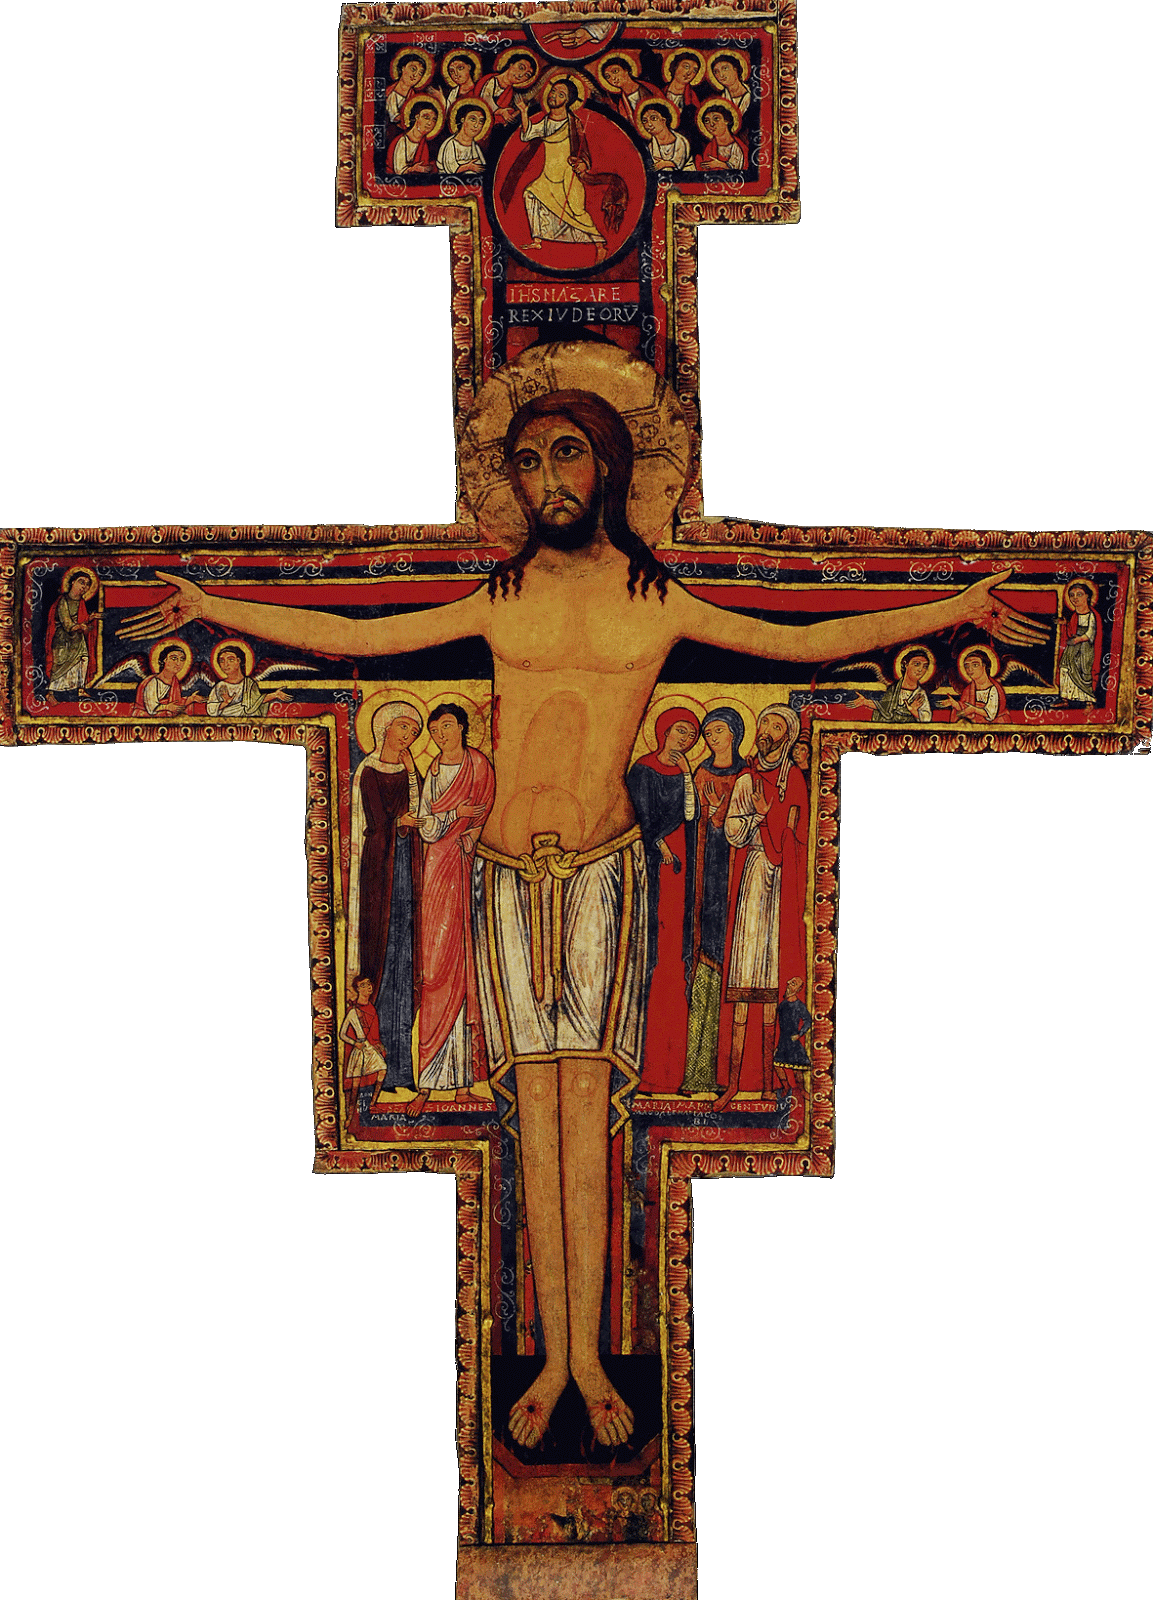 XIAOSHA 1 Croce di Gesù Cristo Decorata con Diamanti Figure reliquiario del crocifisso della Chiesa Preghiera di Gesù Cristo sul Decoro della Croce di Sostegno